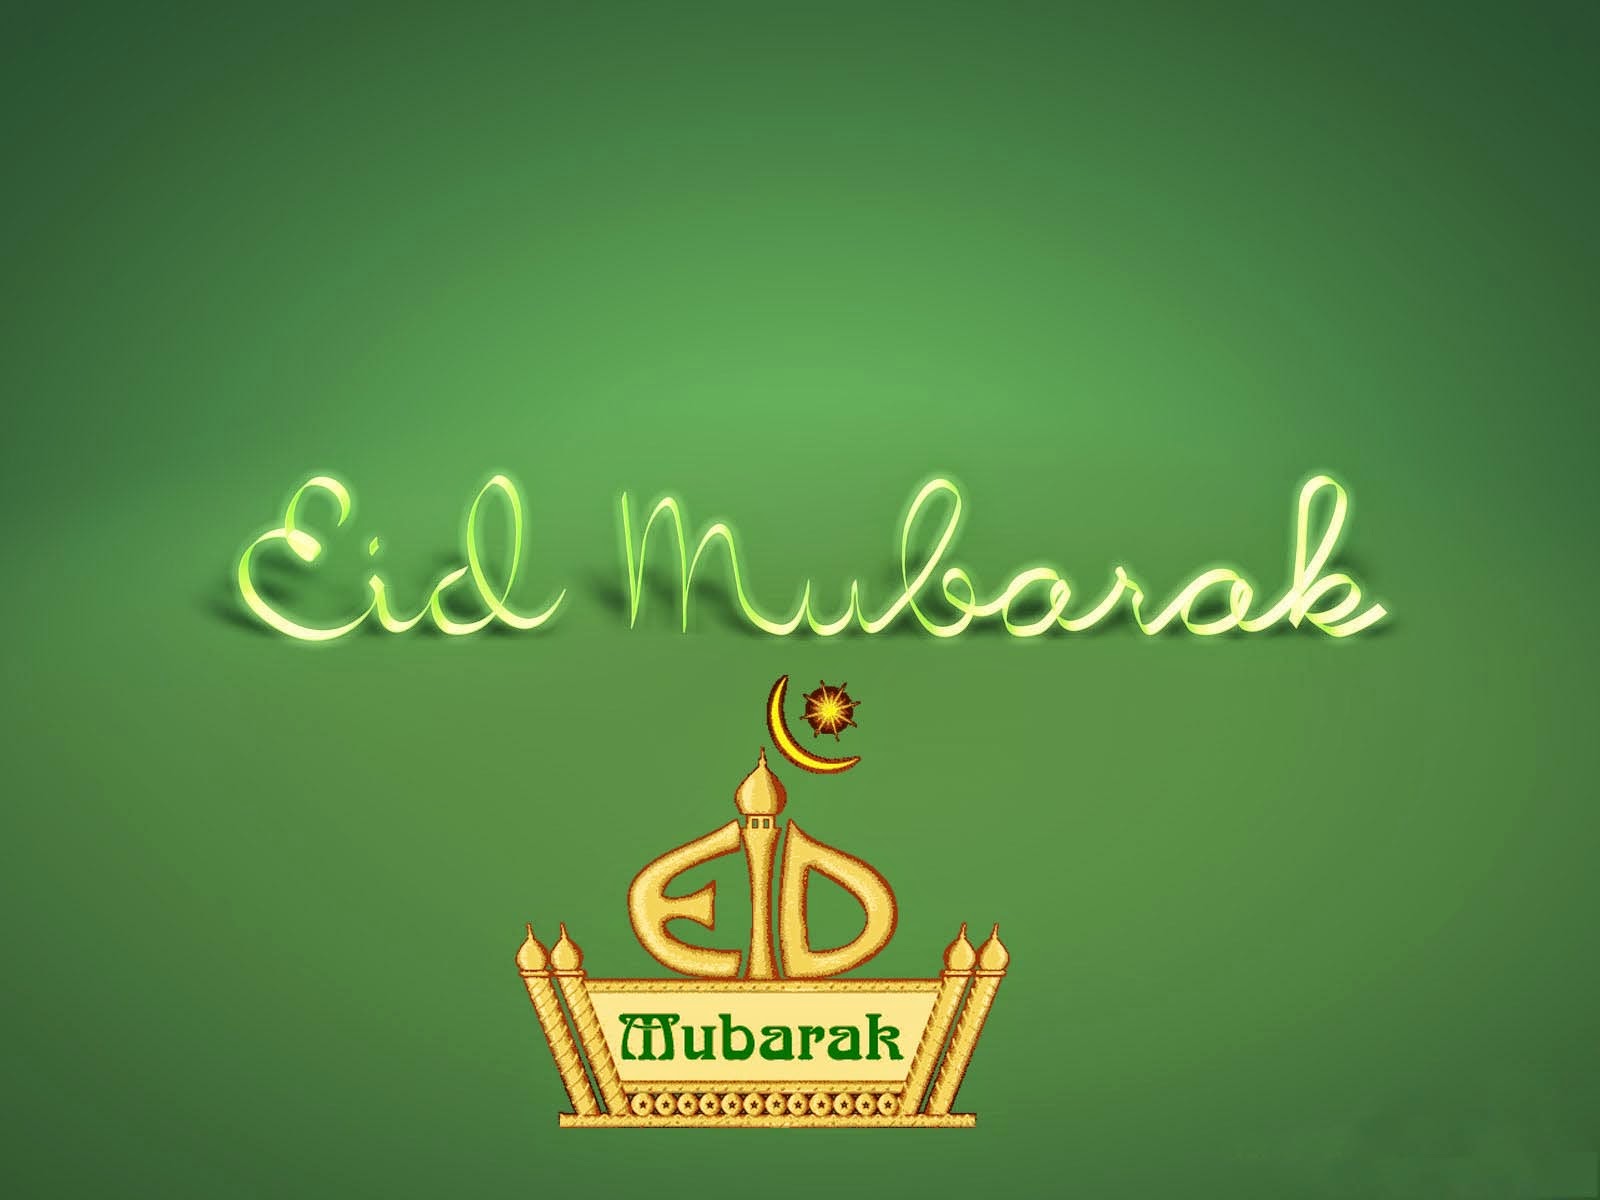 Happy EID Mubarak wallpapers , Pictures, Images 2014 